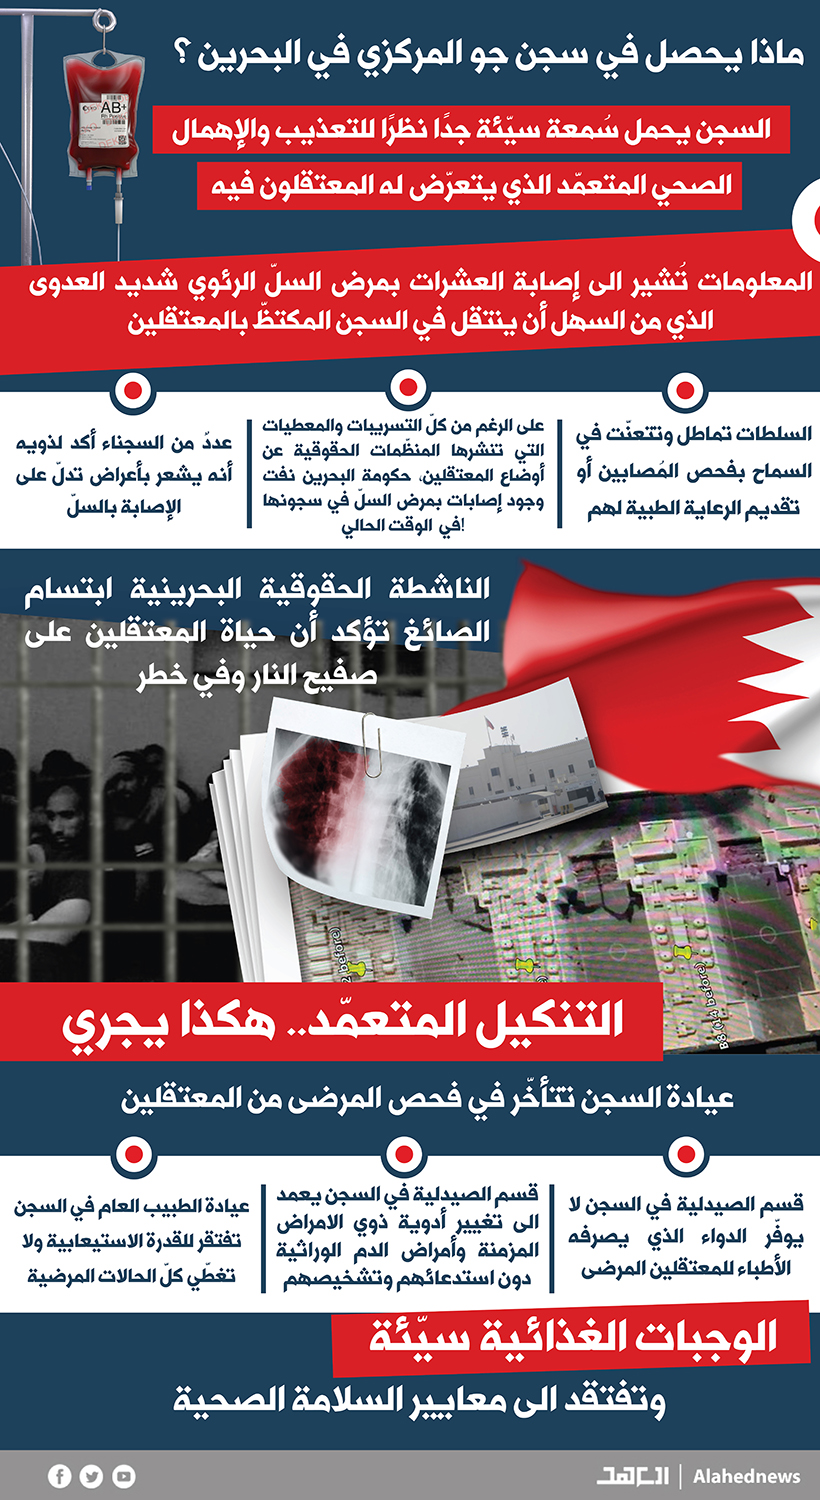 سجن "جو" البحريني: السلطات تدفع المعتقلين للموت بالسلّ!